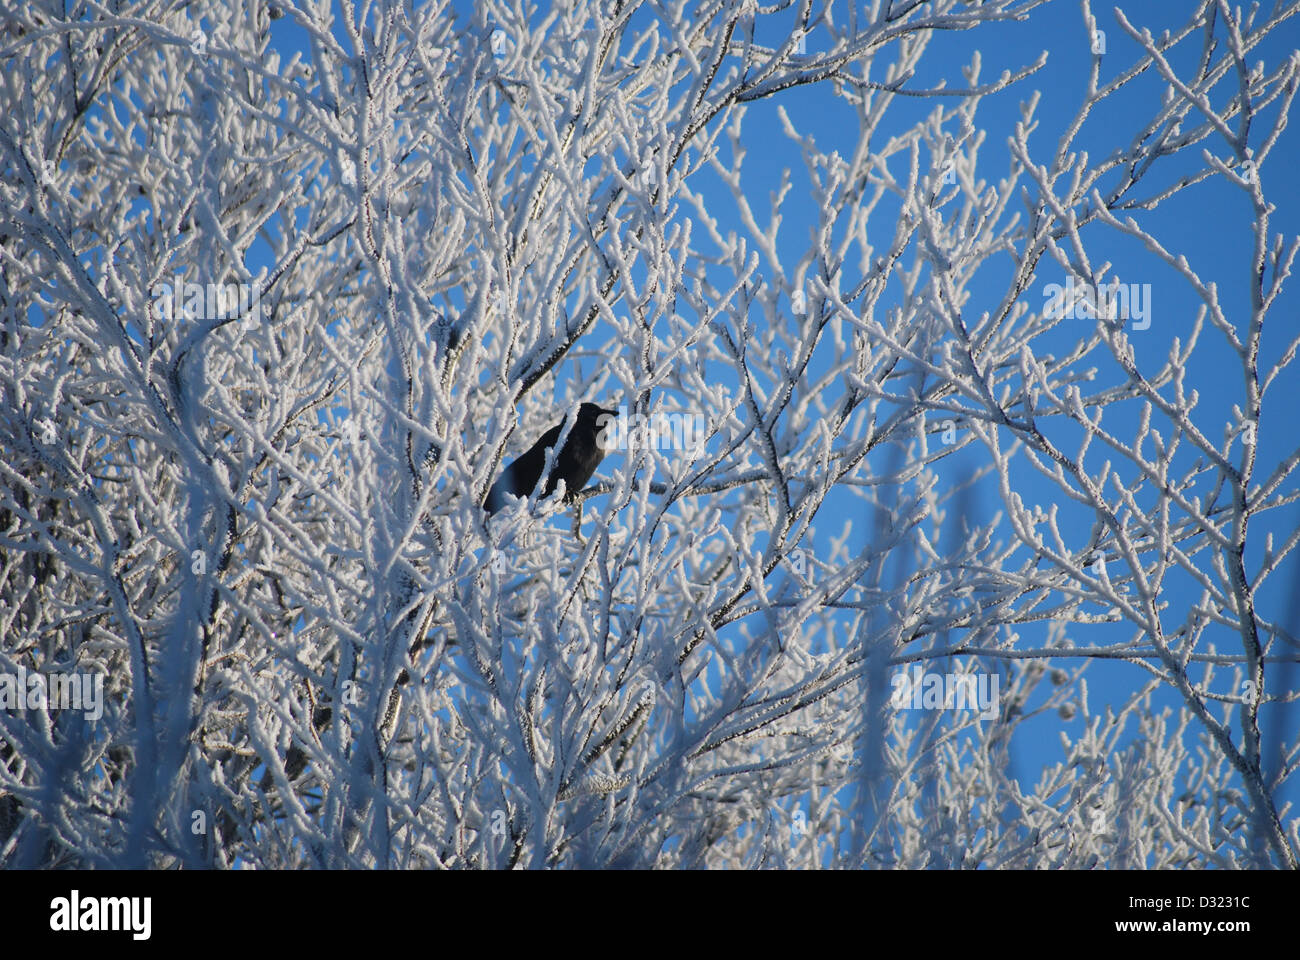 Una coperta di neve albero in inverno contro un luminoso cielo azzurro sfondo con una corona raven taccola uccello nei rami in contrasto Foto Stock